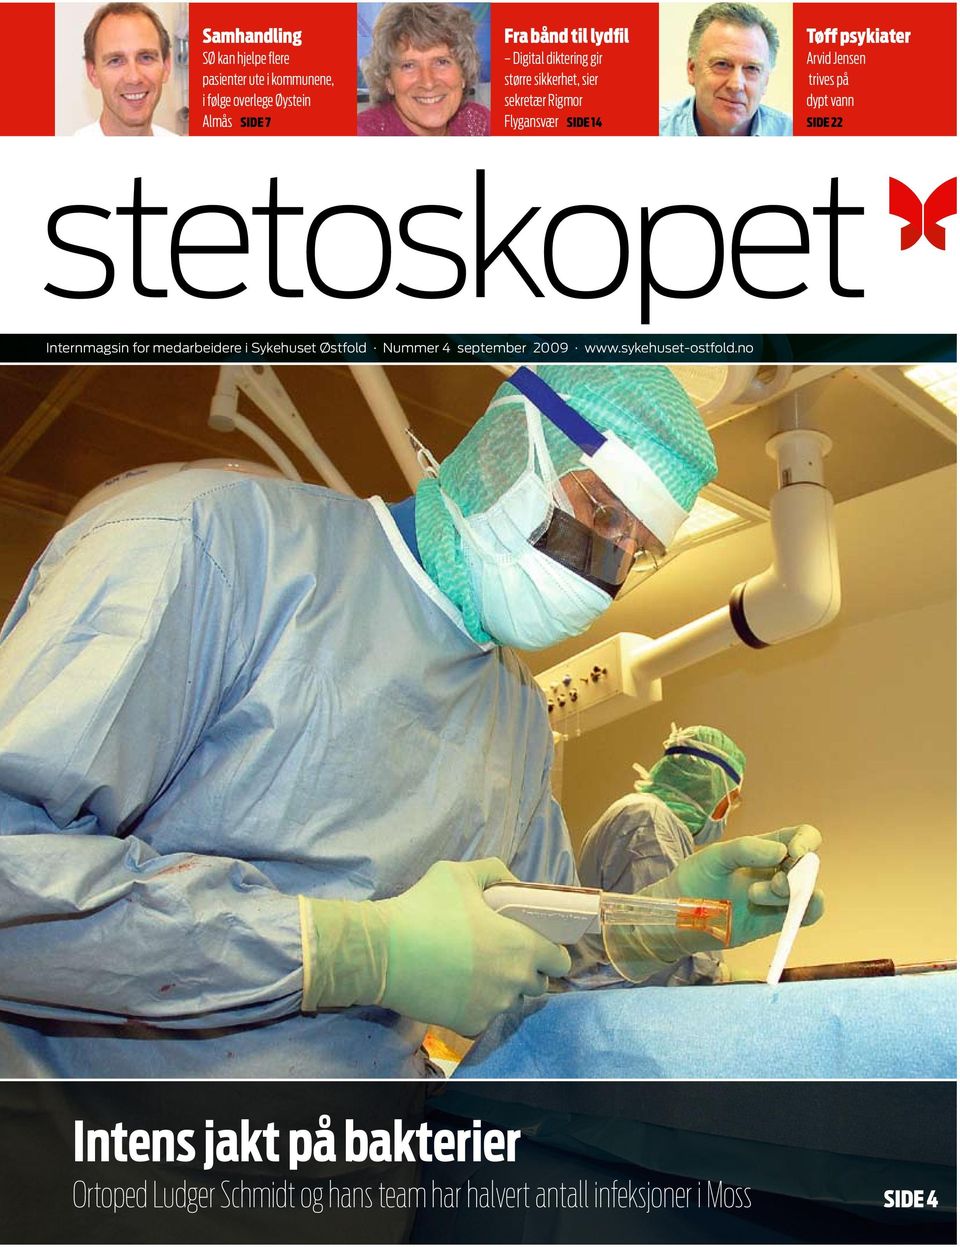 dypt vann side 22 stetoskopet Internmagsin for medarbeidere i Sykehuset Østfold Nummer 4 september 2009 www.